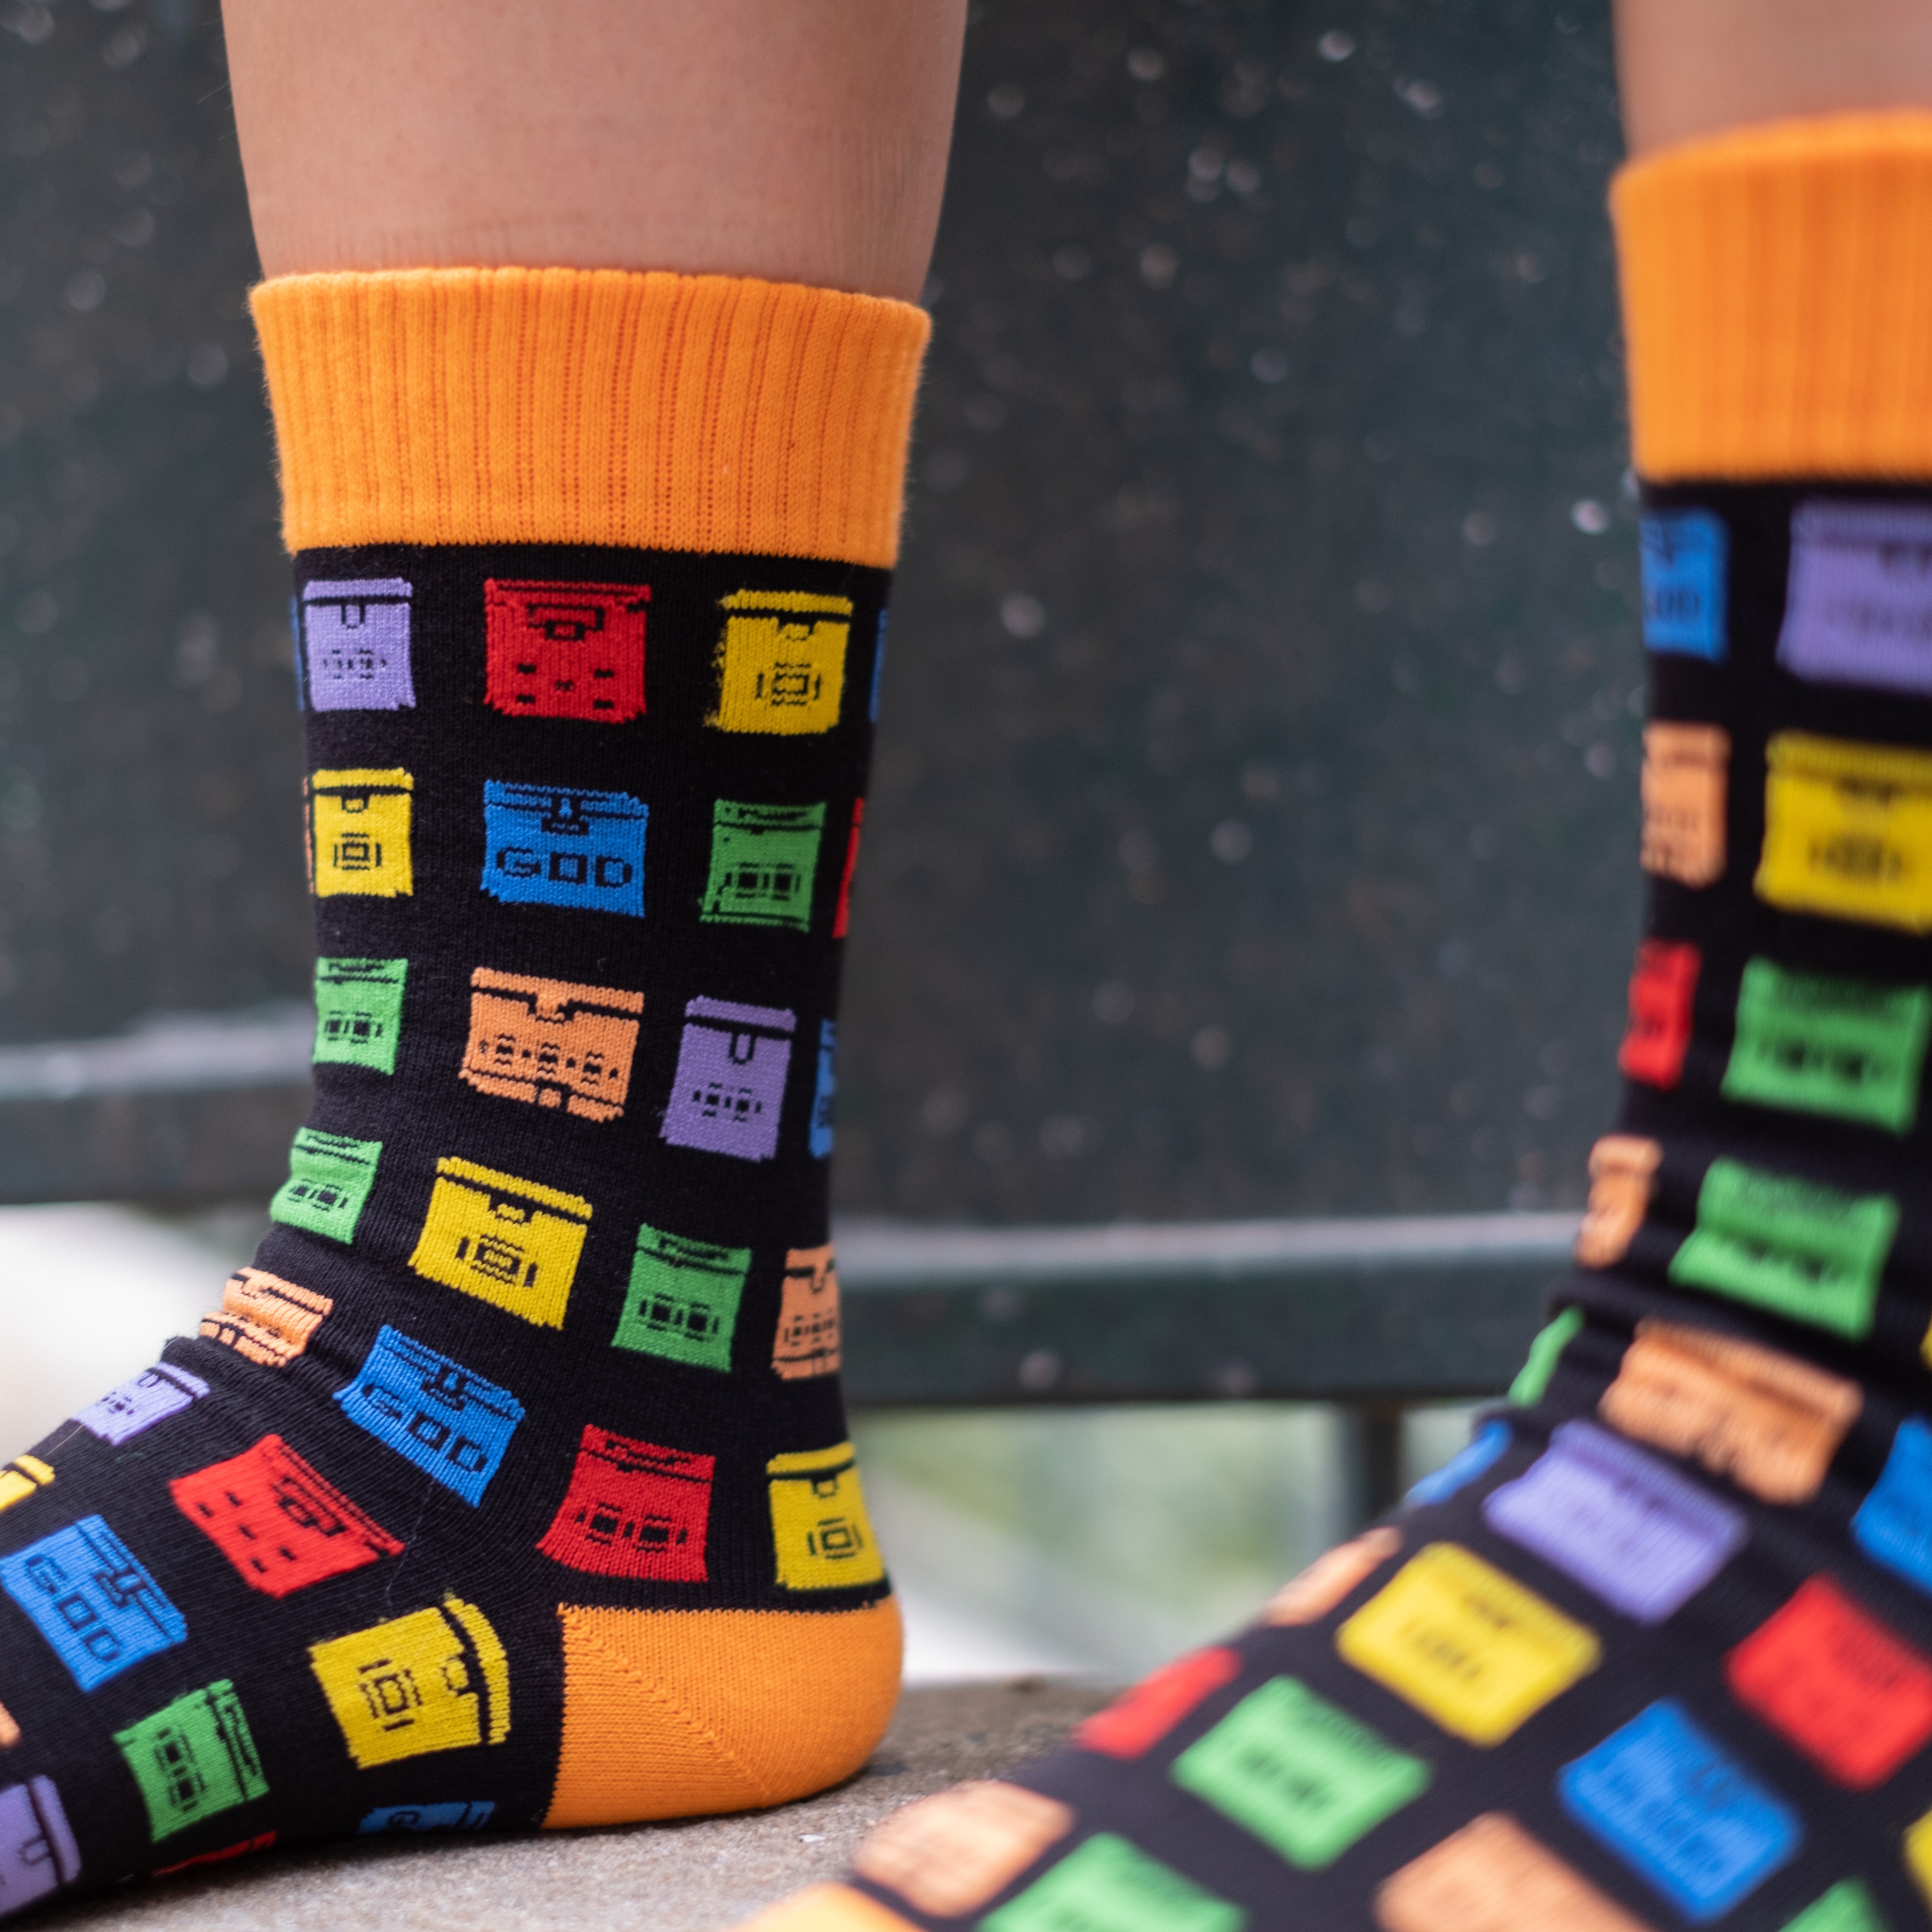 Rainbow Letterbox Socks